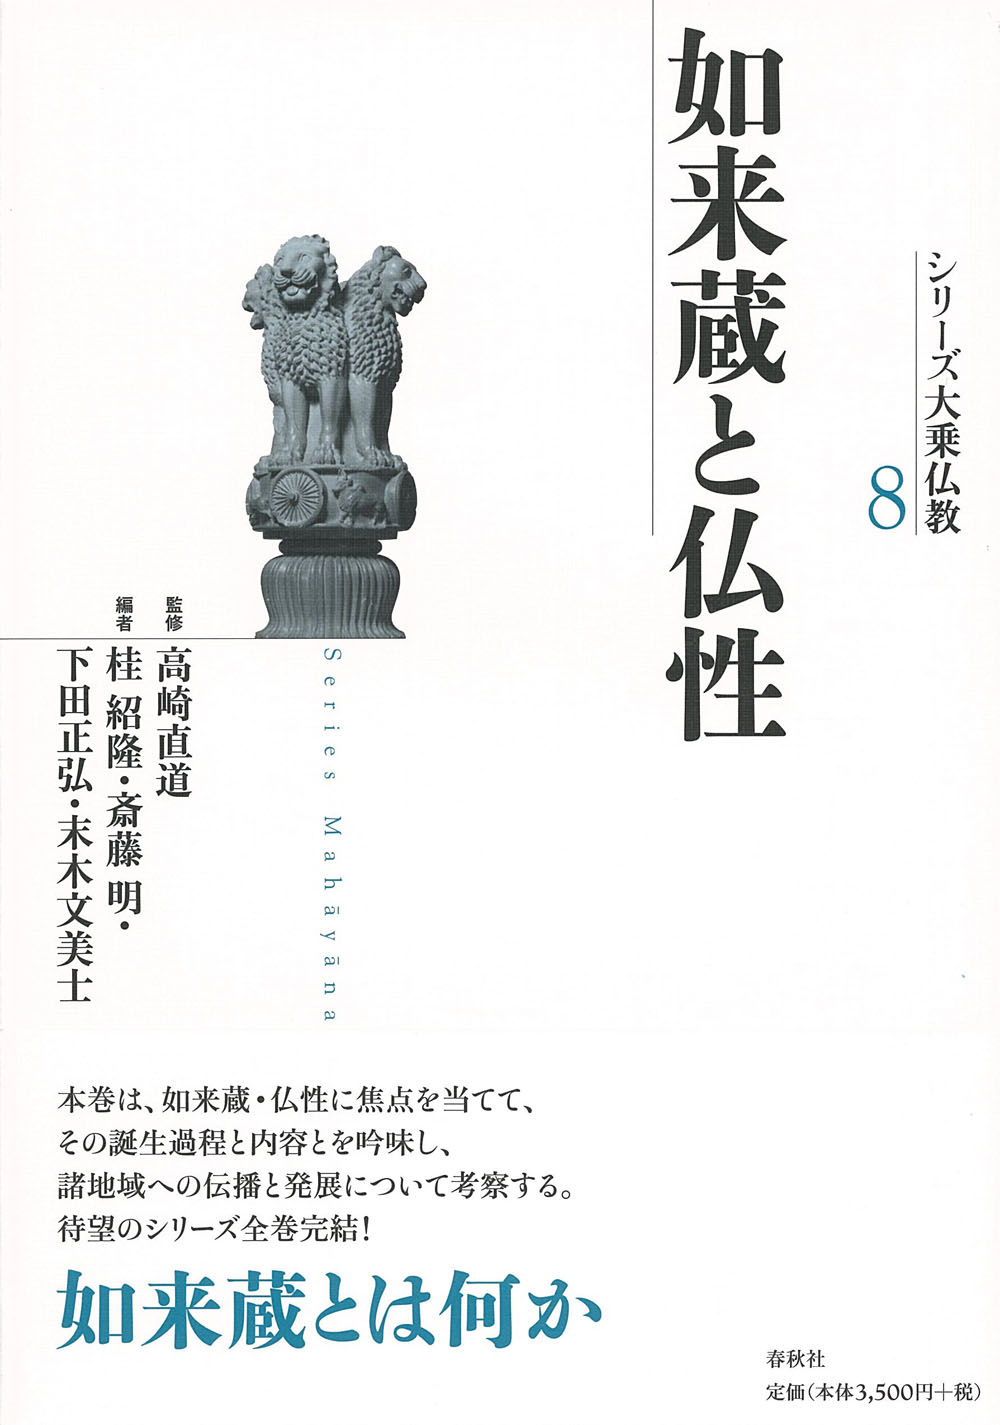 白い表紙に、シリーズ大乗仏教のイメージである狛犬の写真と書名